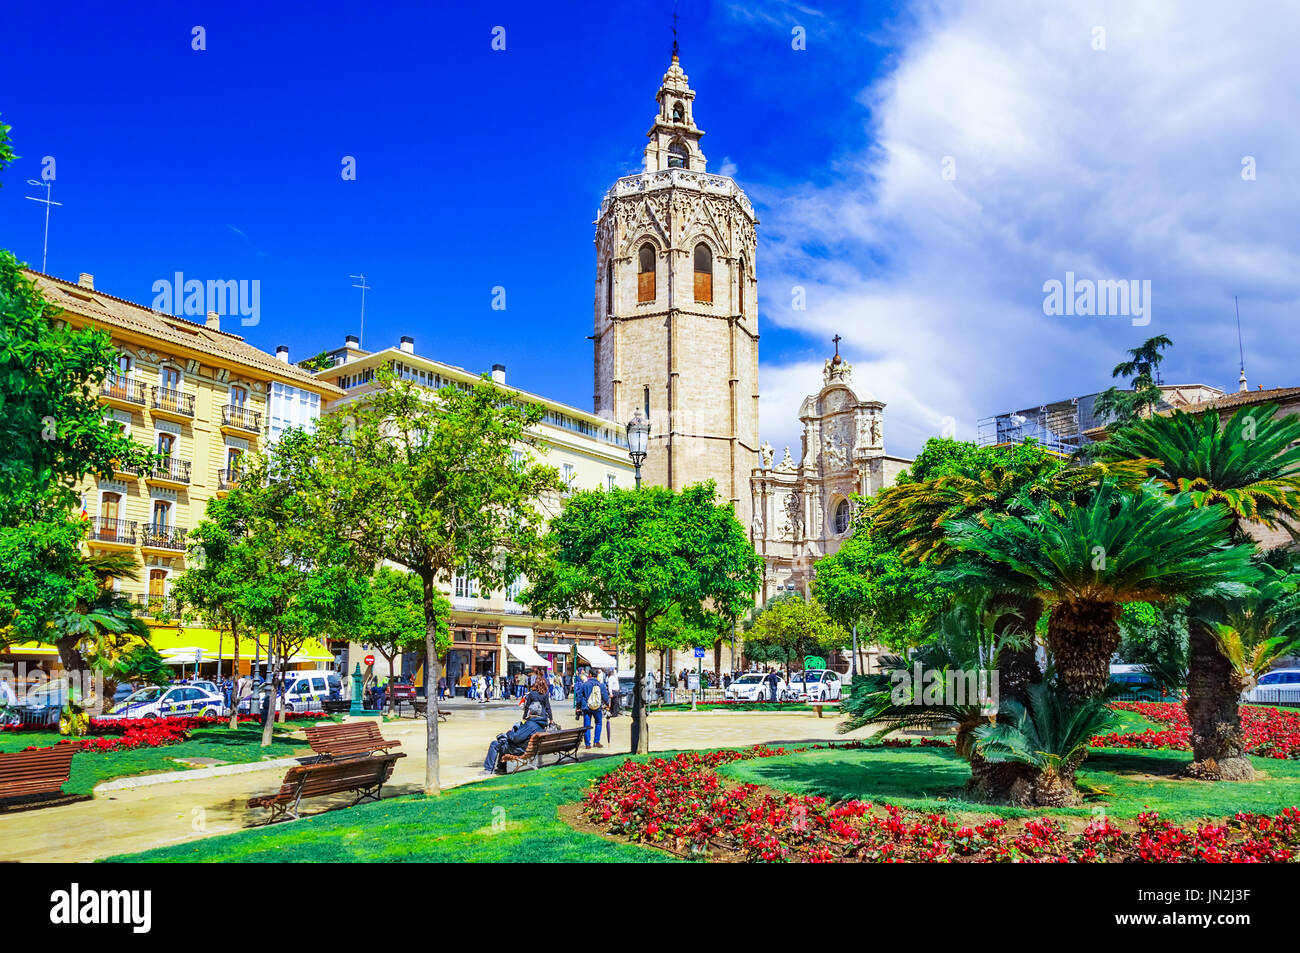 Tour micalet, micalet dans la plaza de la Reina, Valencia, Espagne, Europe Banque D'Images